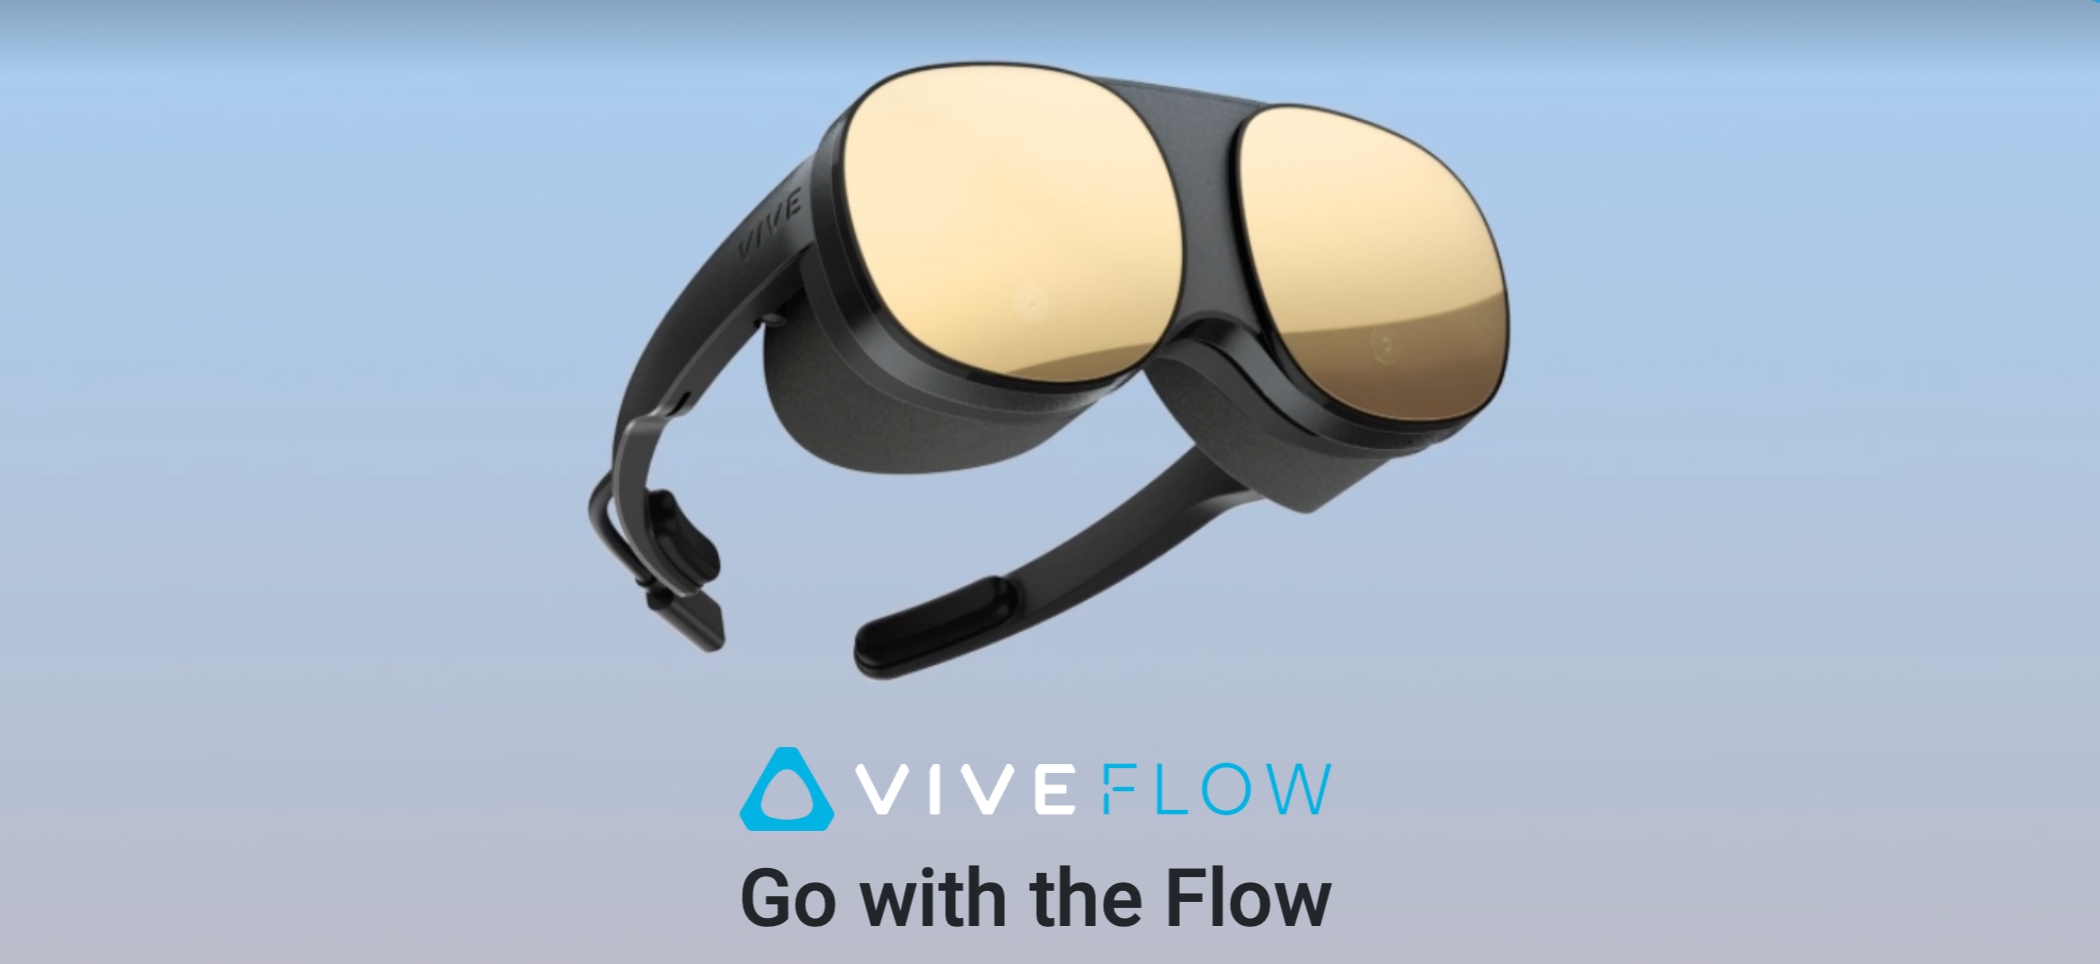 HTC Vive Flow: ein kompakter VR-Helm, der Ihr Smartphone als Fernbedienung nutzt